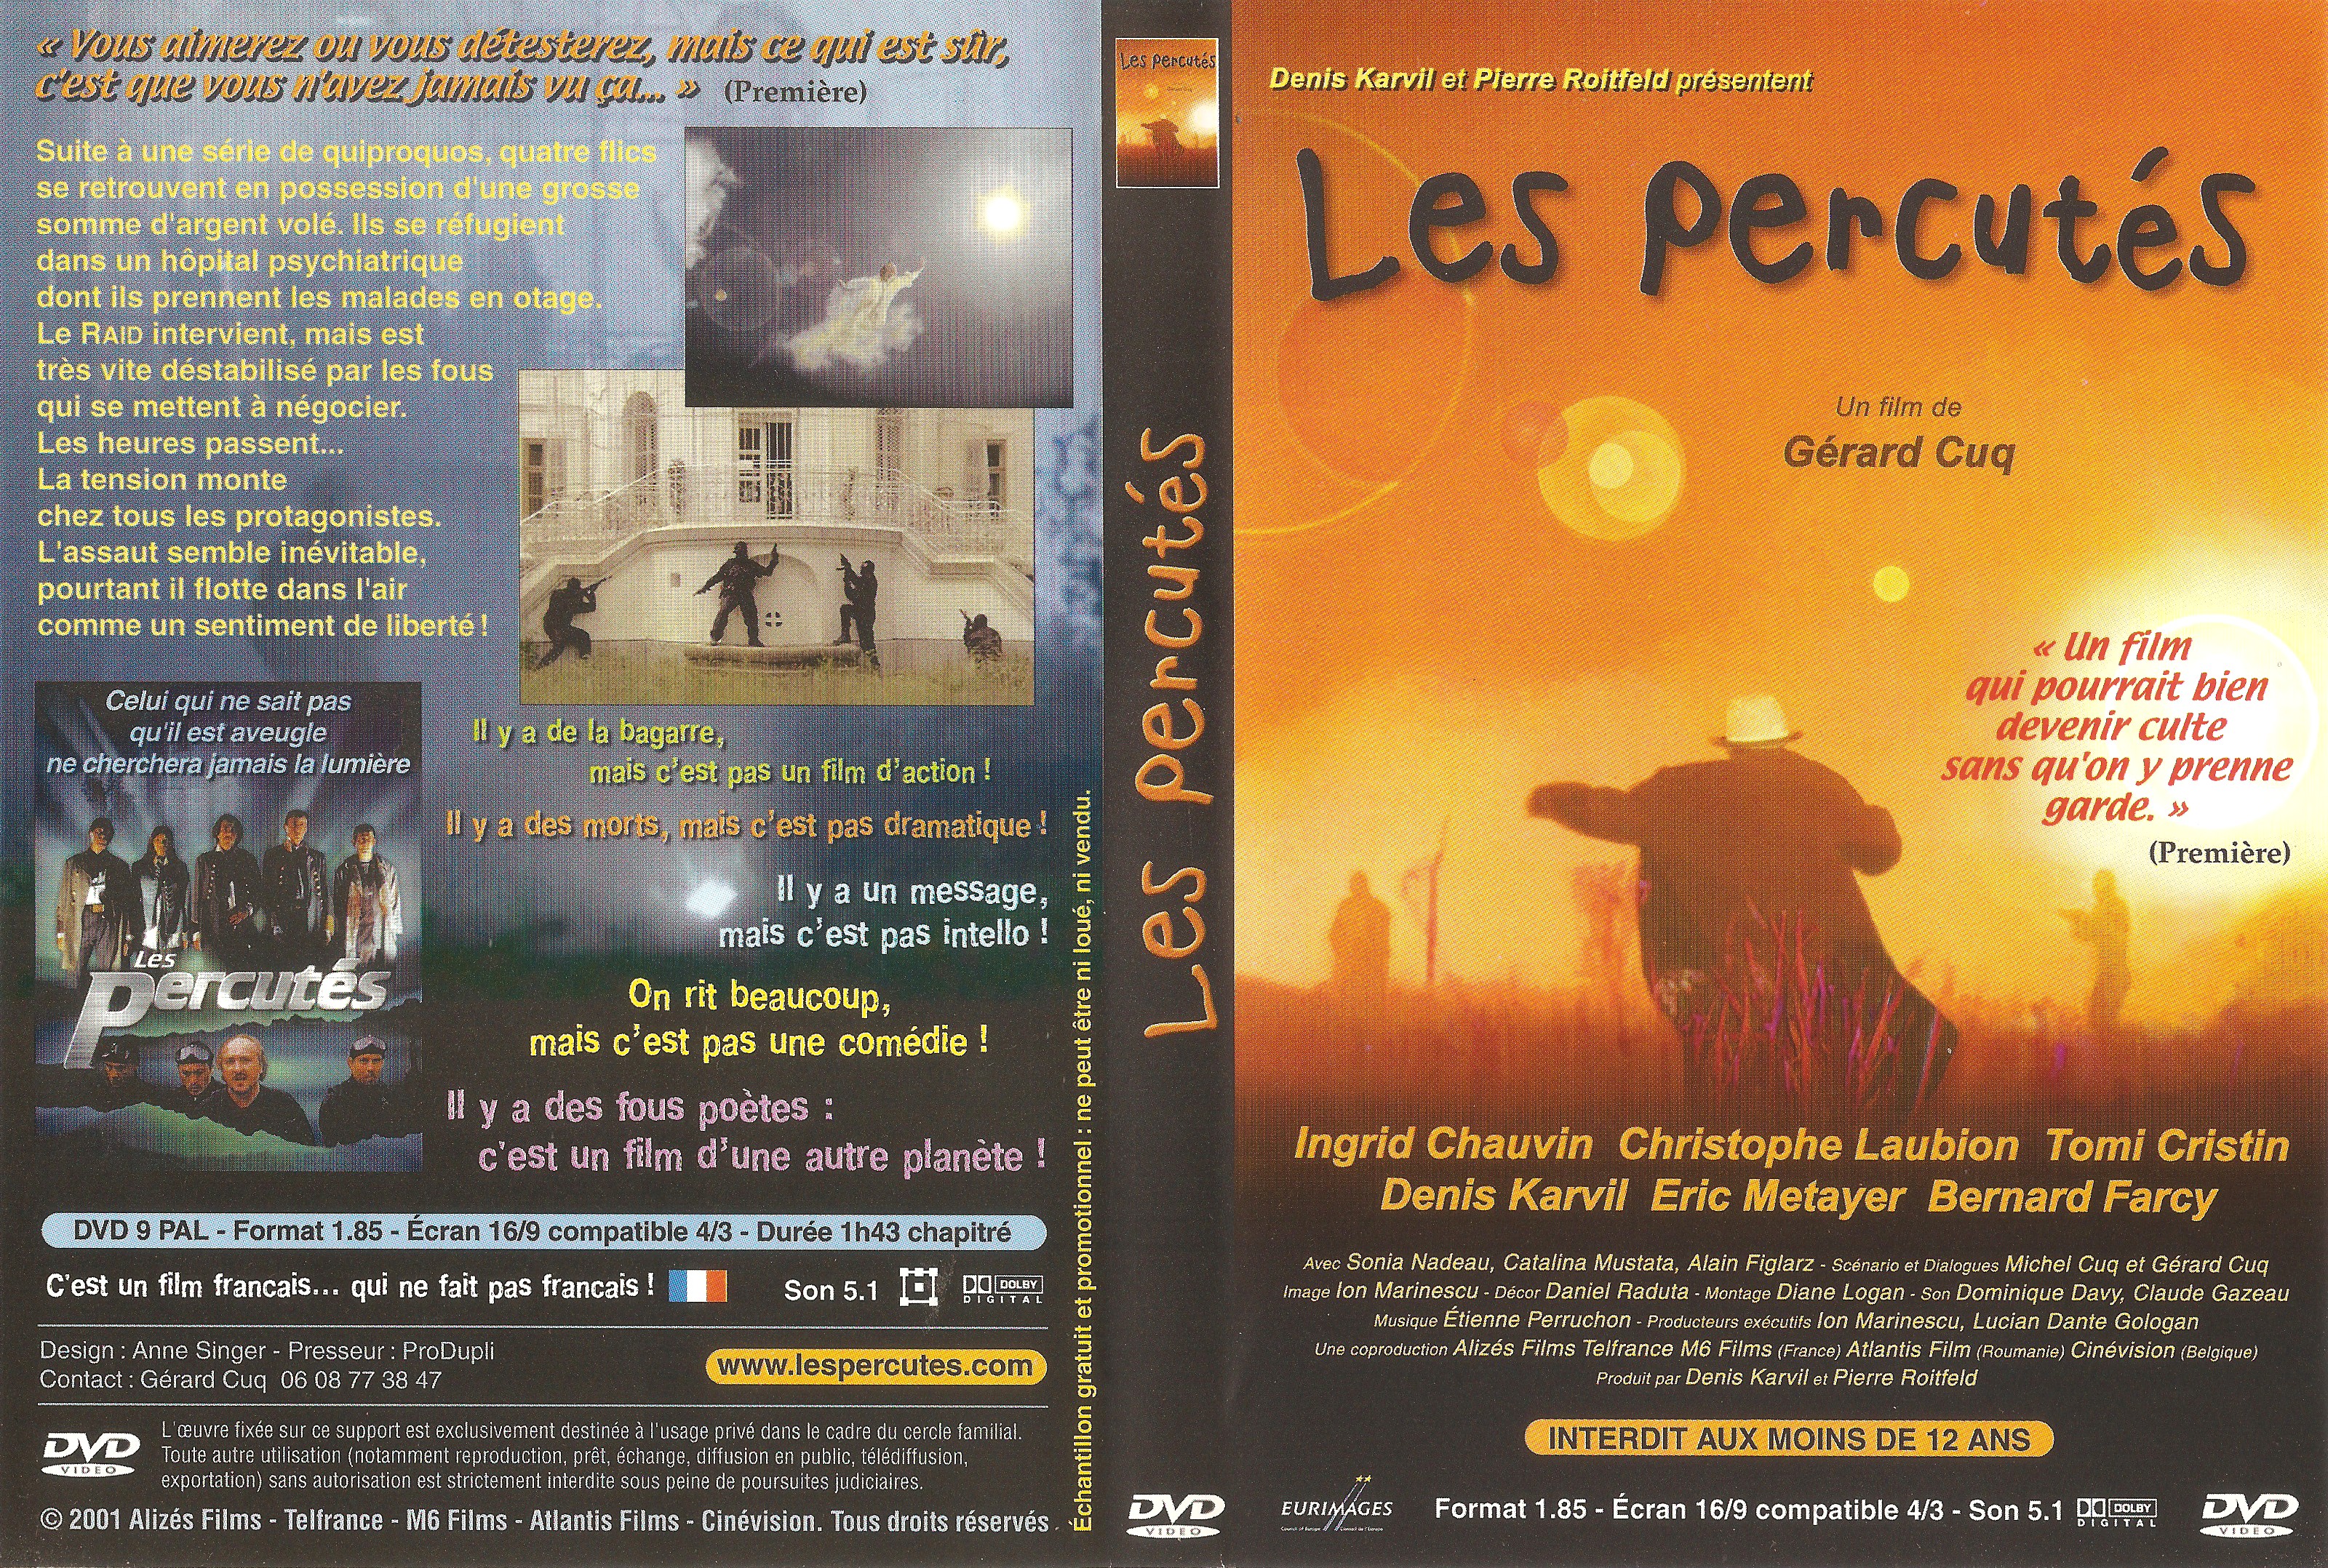 Jaquette DVD Les percuts v2